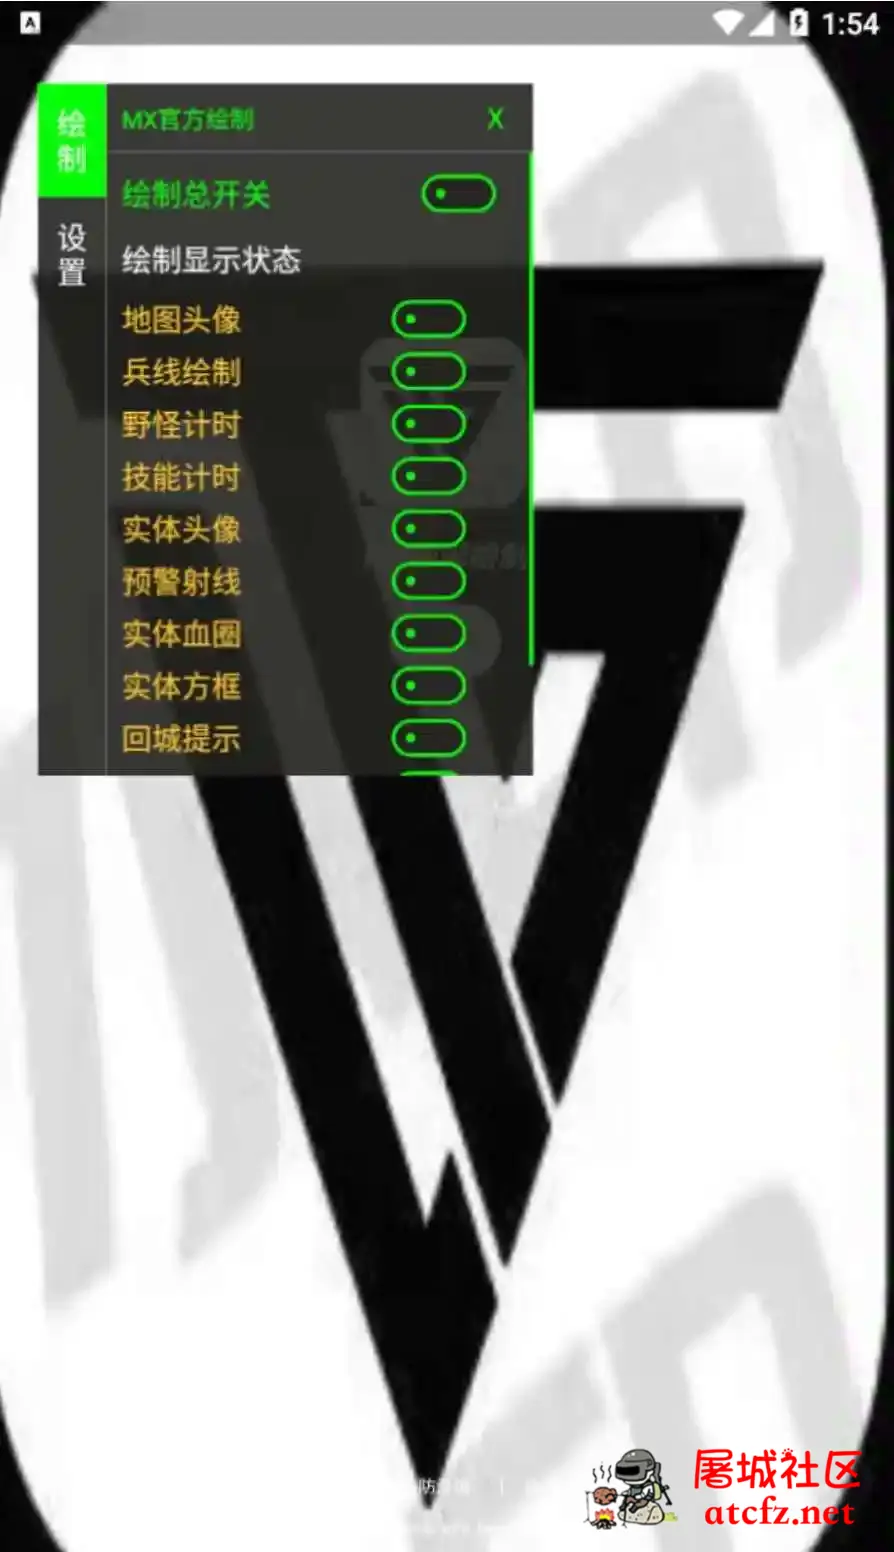 王者荣耀MX绘制透视CD野怪计时插件破解版 屠城辅助网www.tcfz1.com9942